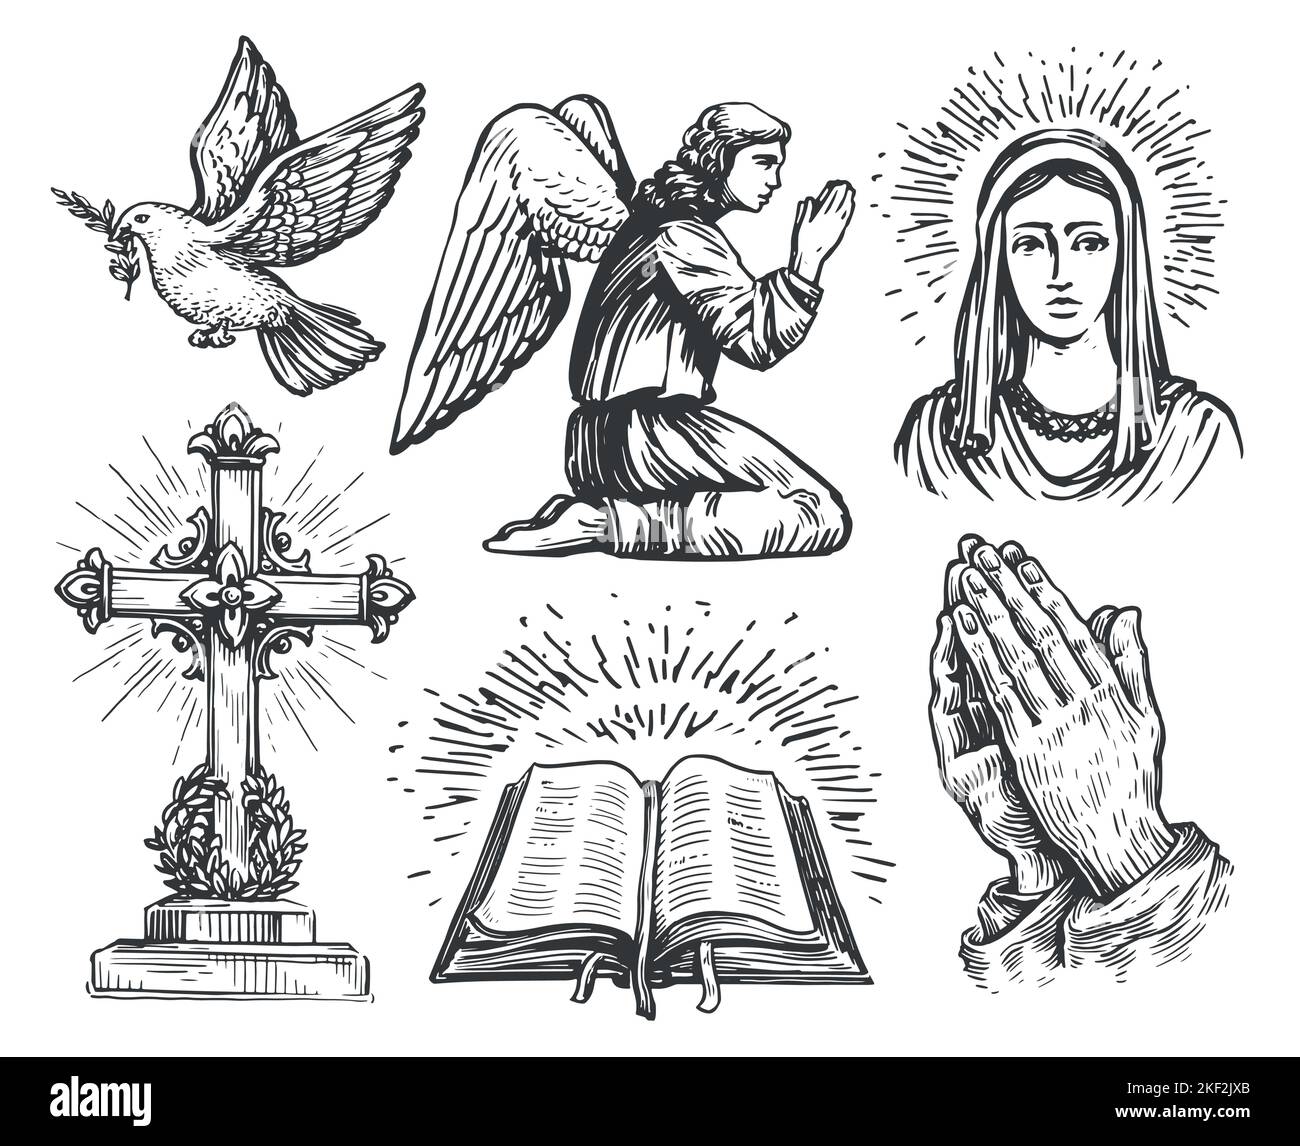 Ange de prière, mains pliées dans la prière, Croix chrétienne, livre de bible, colombe volante avec branche d'olivier, Sainte Maria Illustration de Vecteur